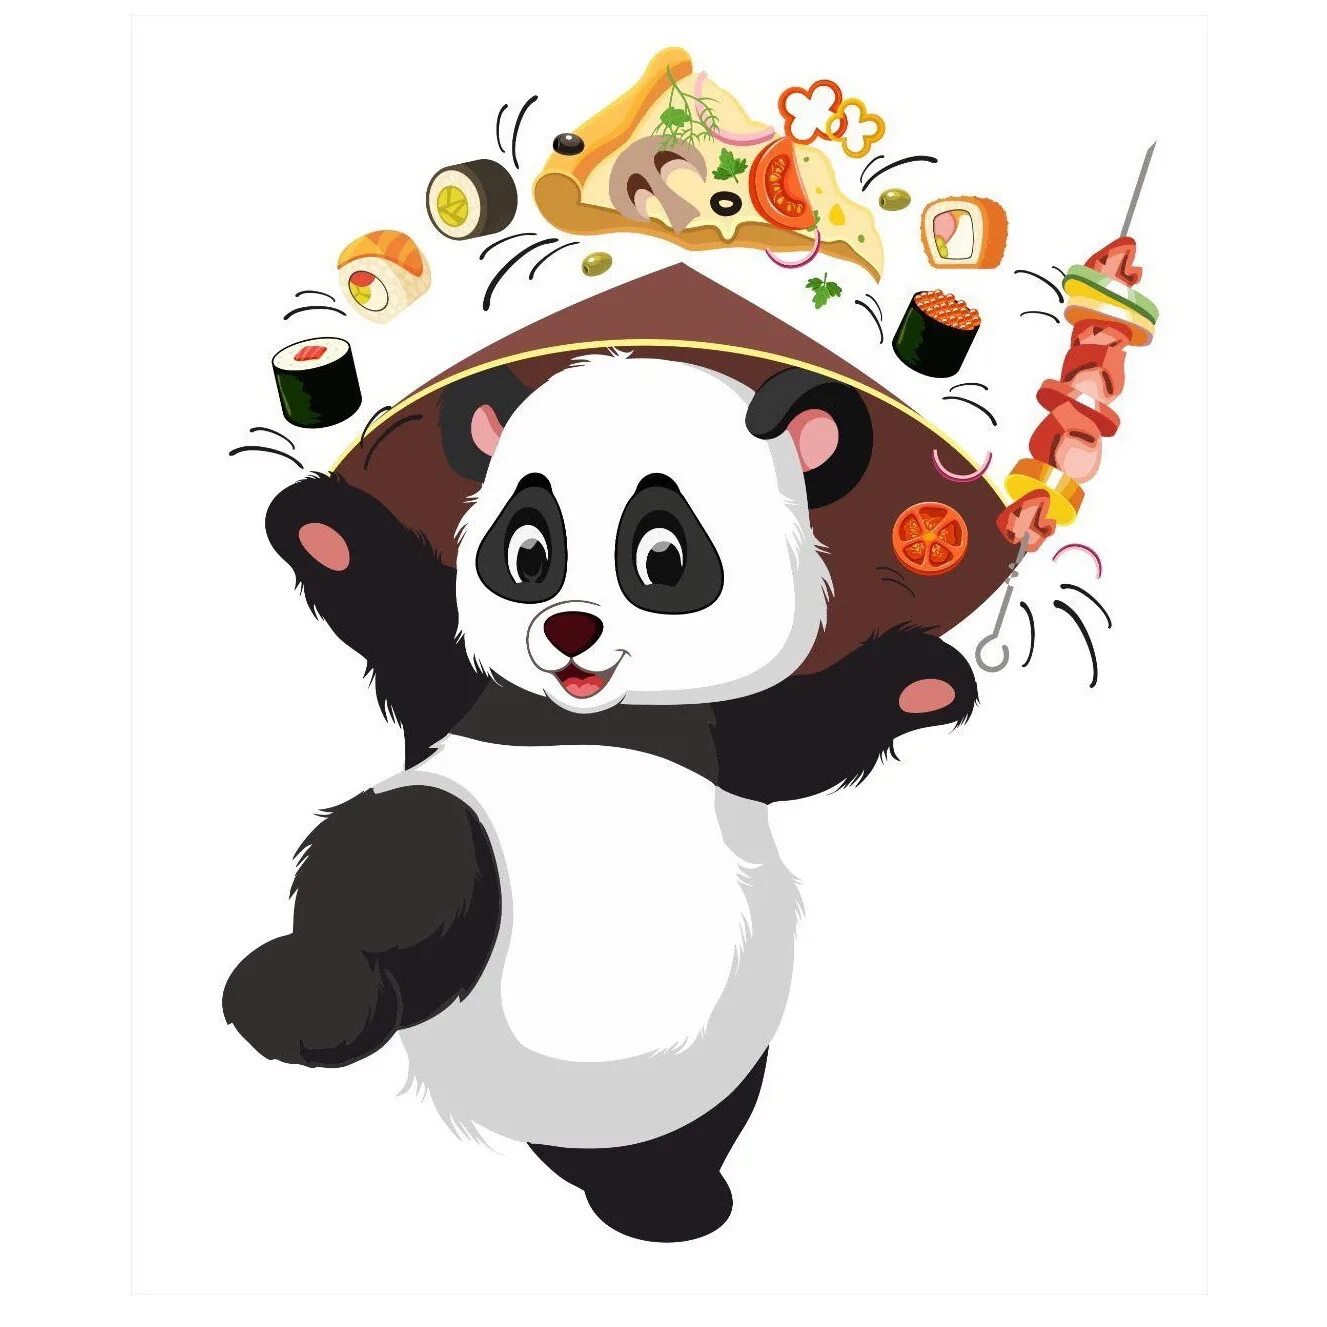 Панда доставка сайт. Панда. Панда иллюстрация. Панда роллы. Суши Панда логотип.